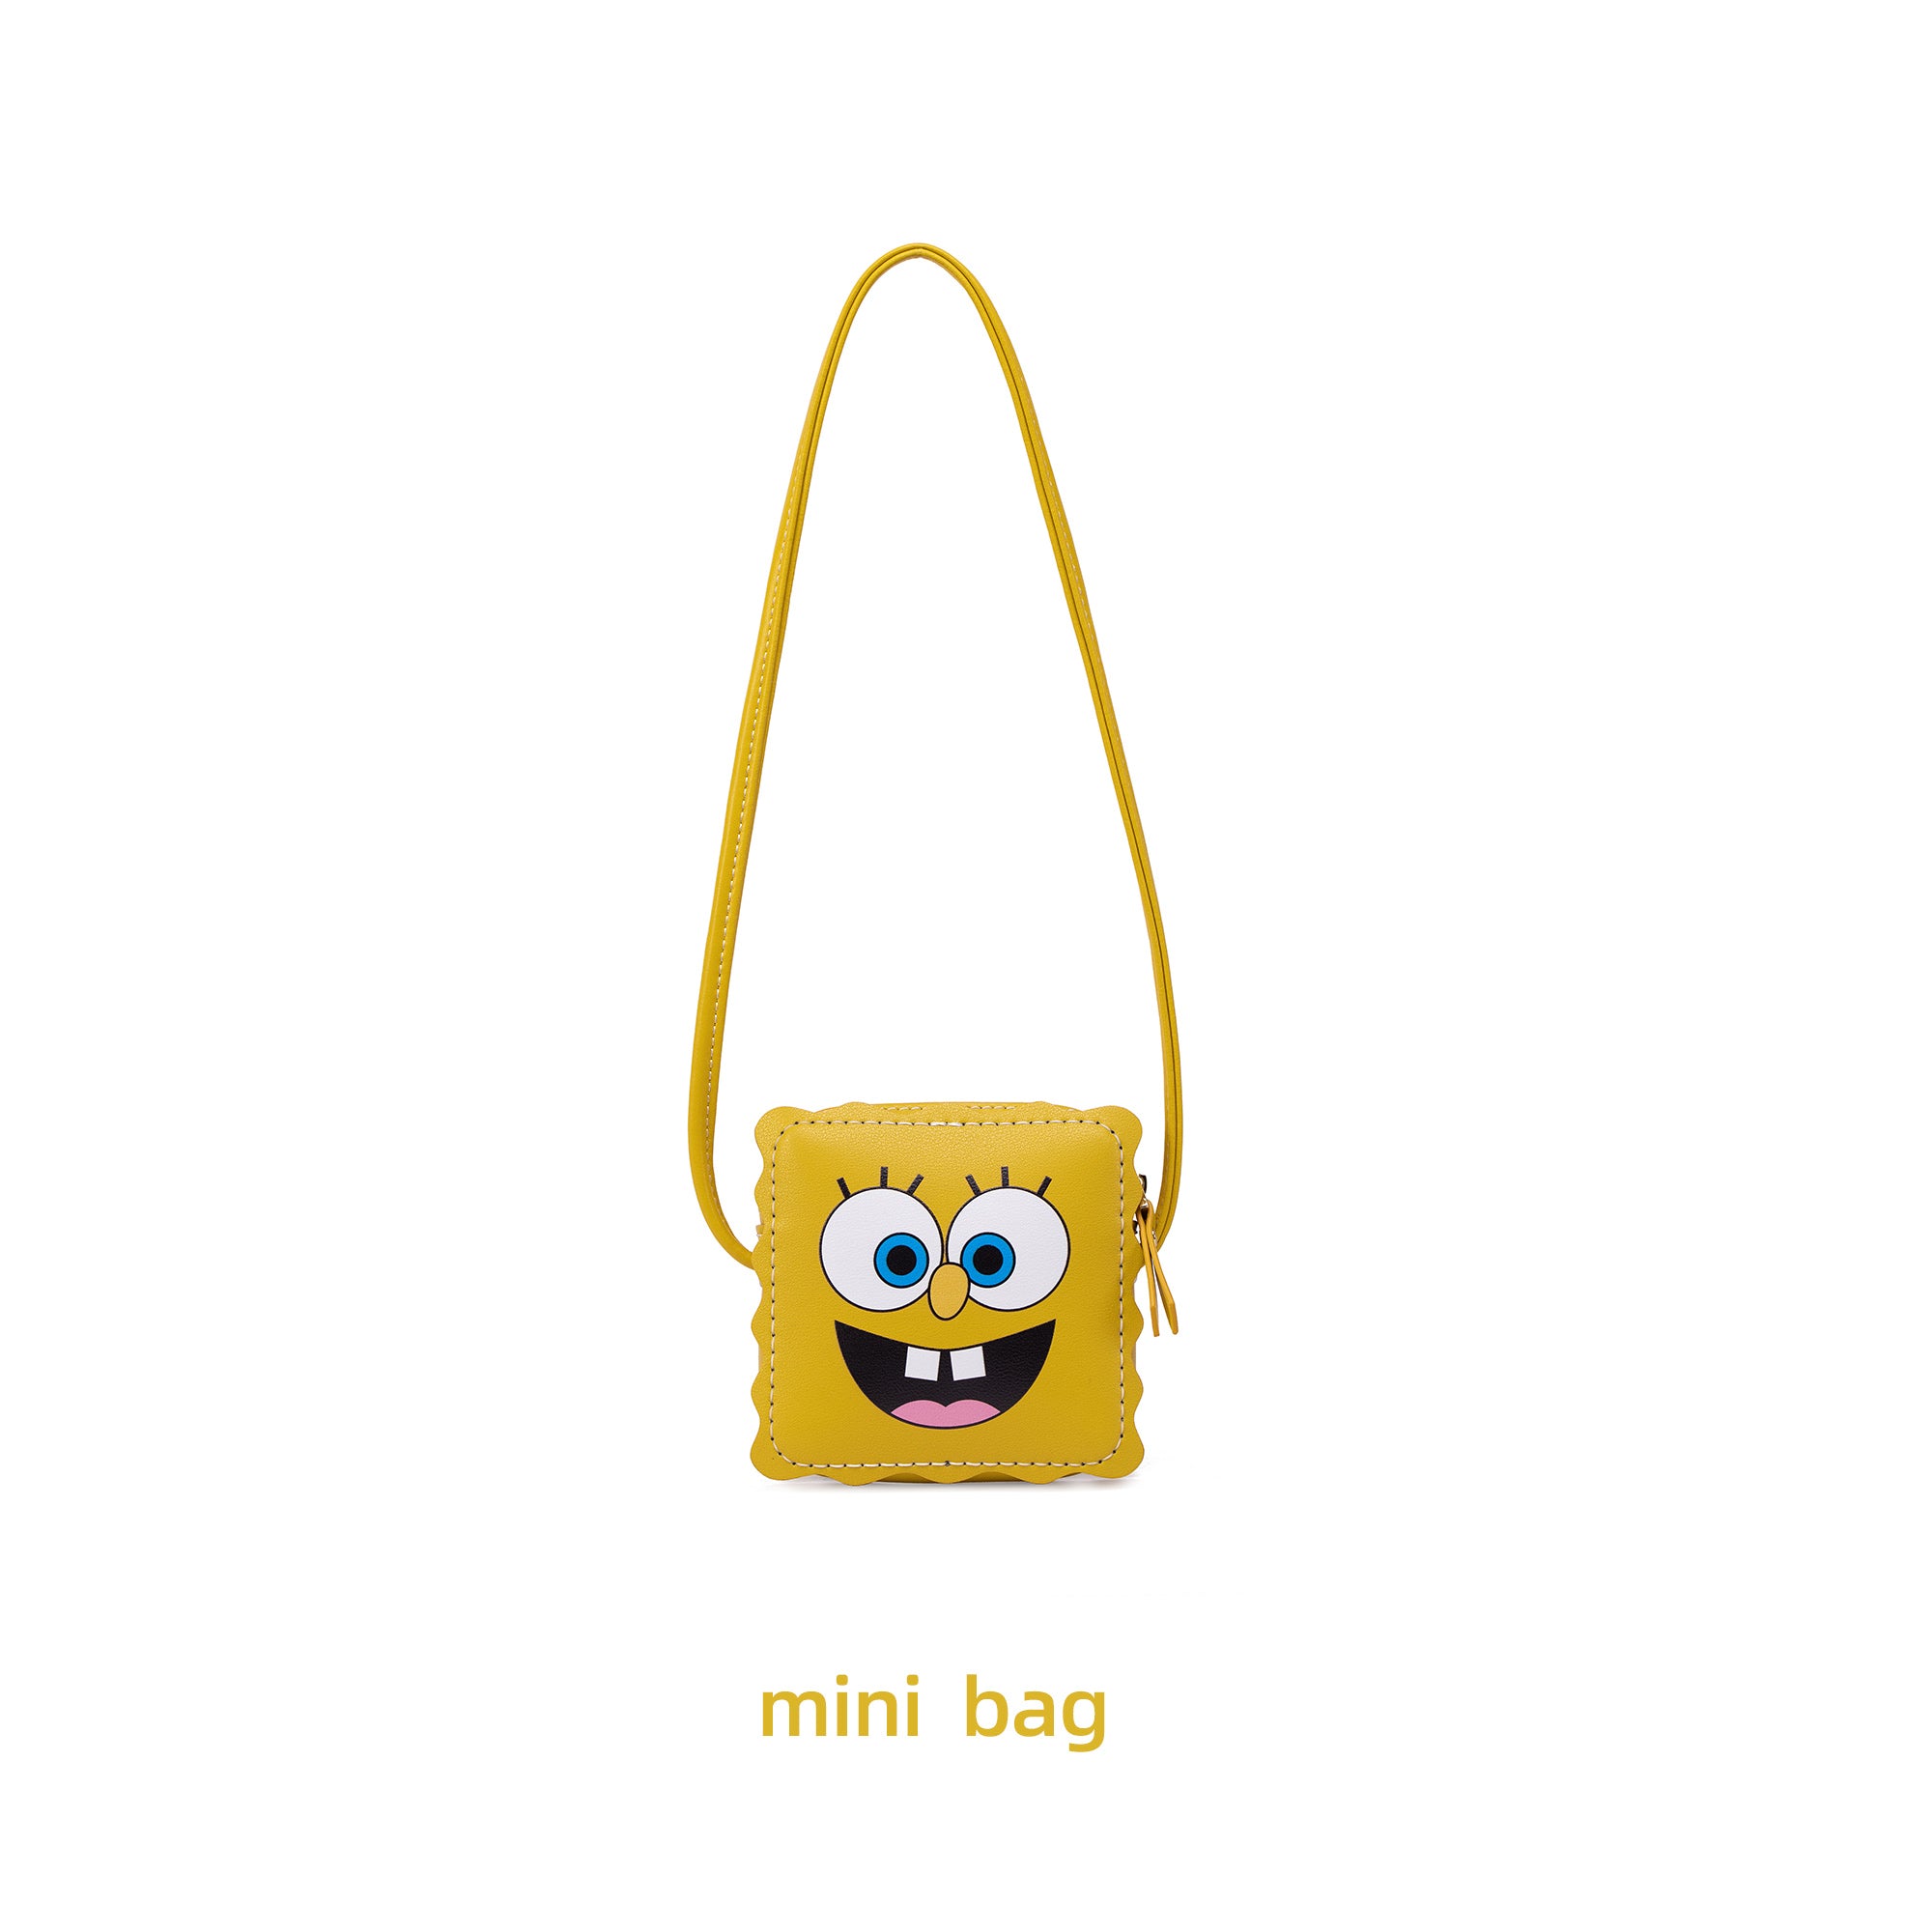 DIY Bag Kits - SpongeBob Bag